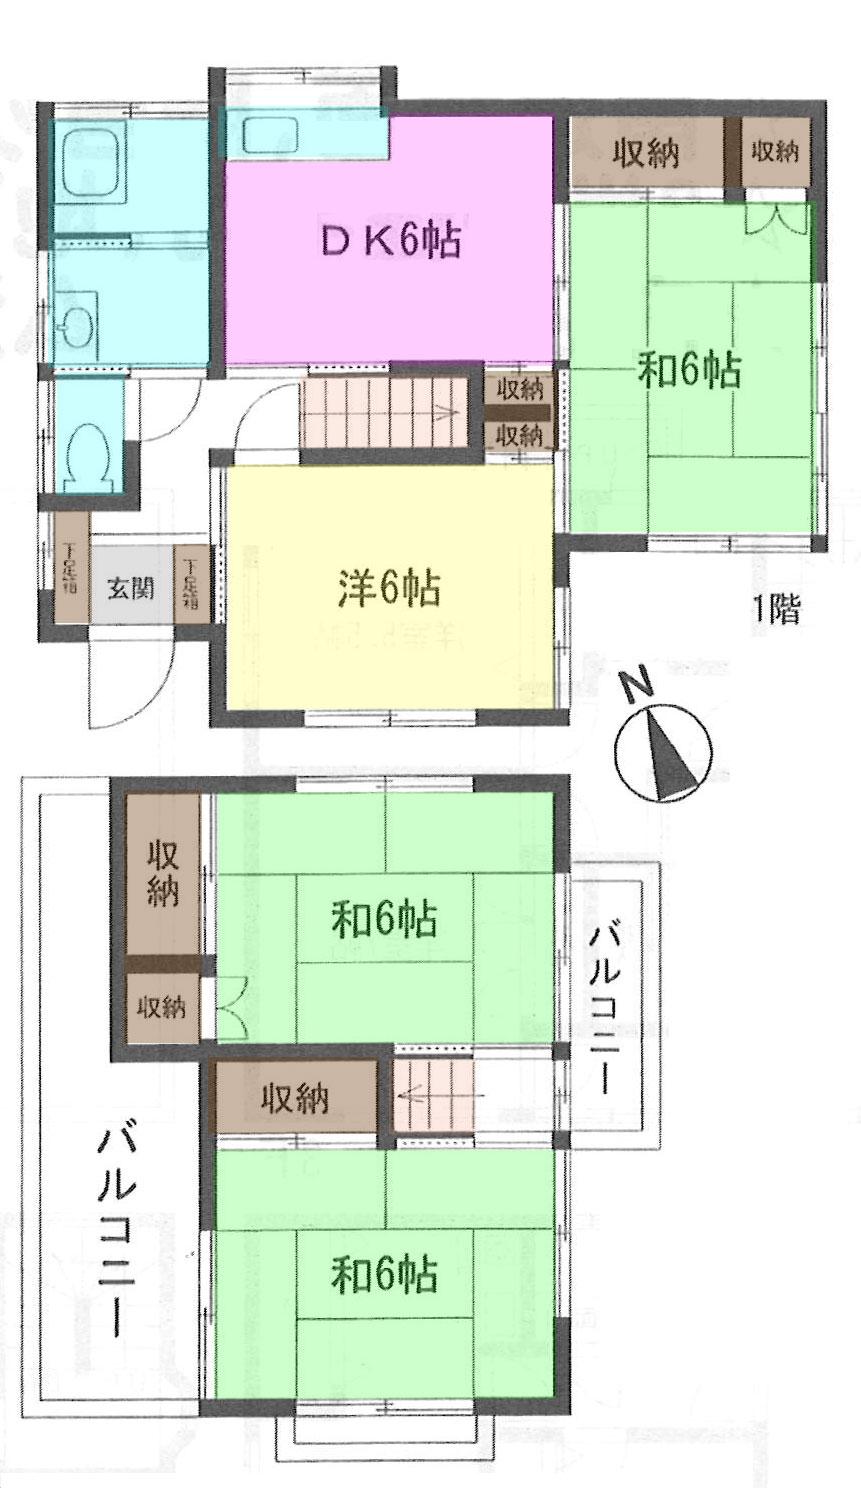 Floor plan. 9.8 million yen, 4DK, Land area 97.15 sq m , Building area 71.21 sq m